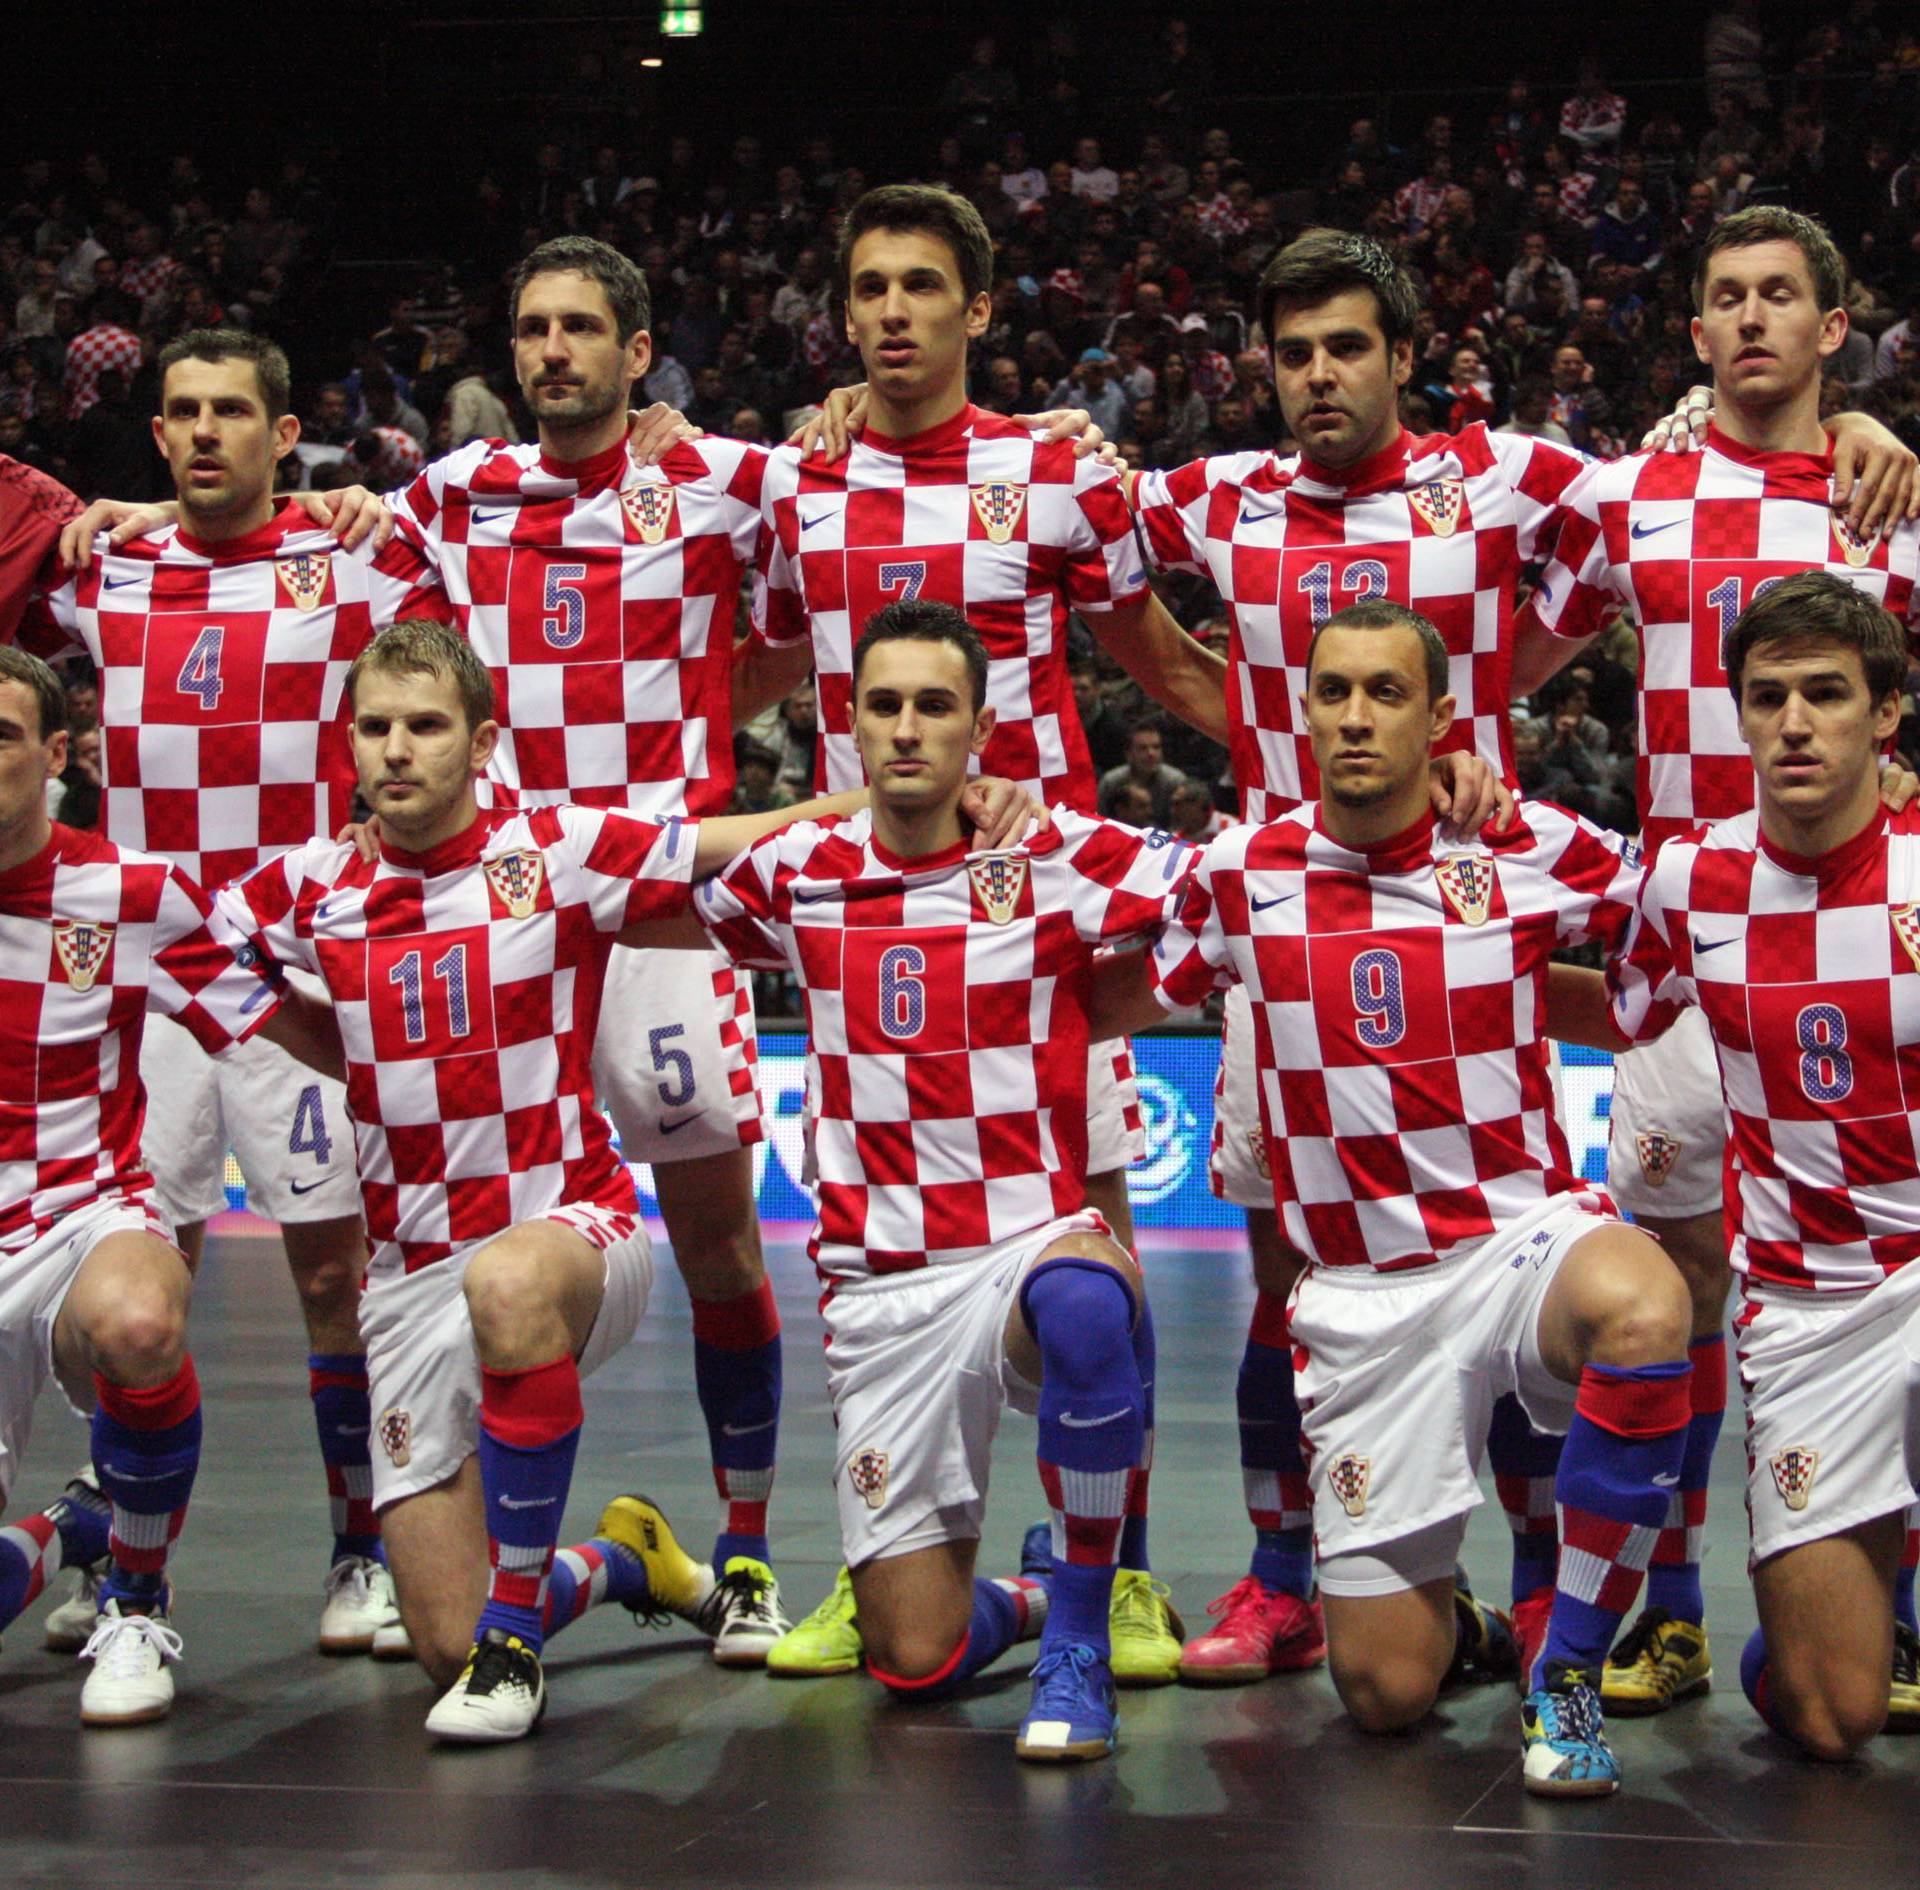 'Nije ovo slučajno, Hrvatska je u futsalu među Top 5 u Europi'